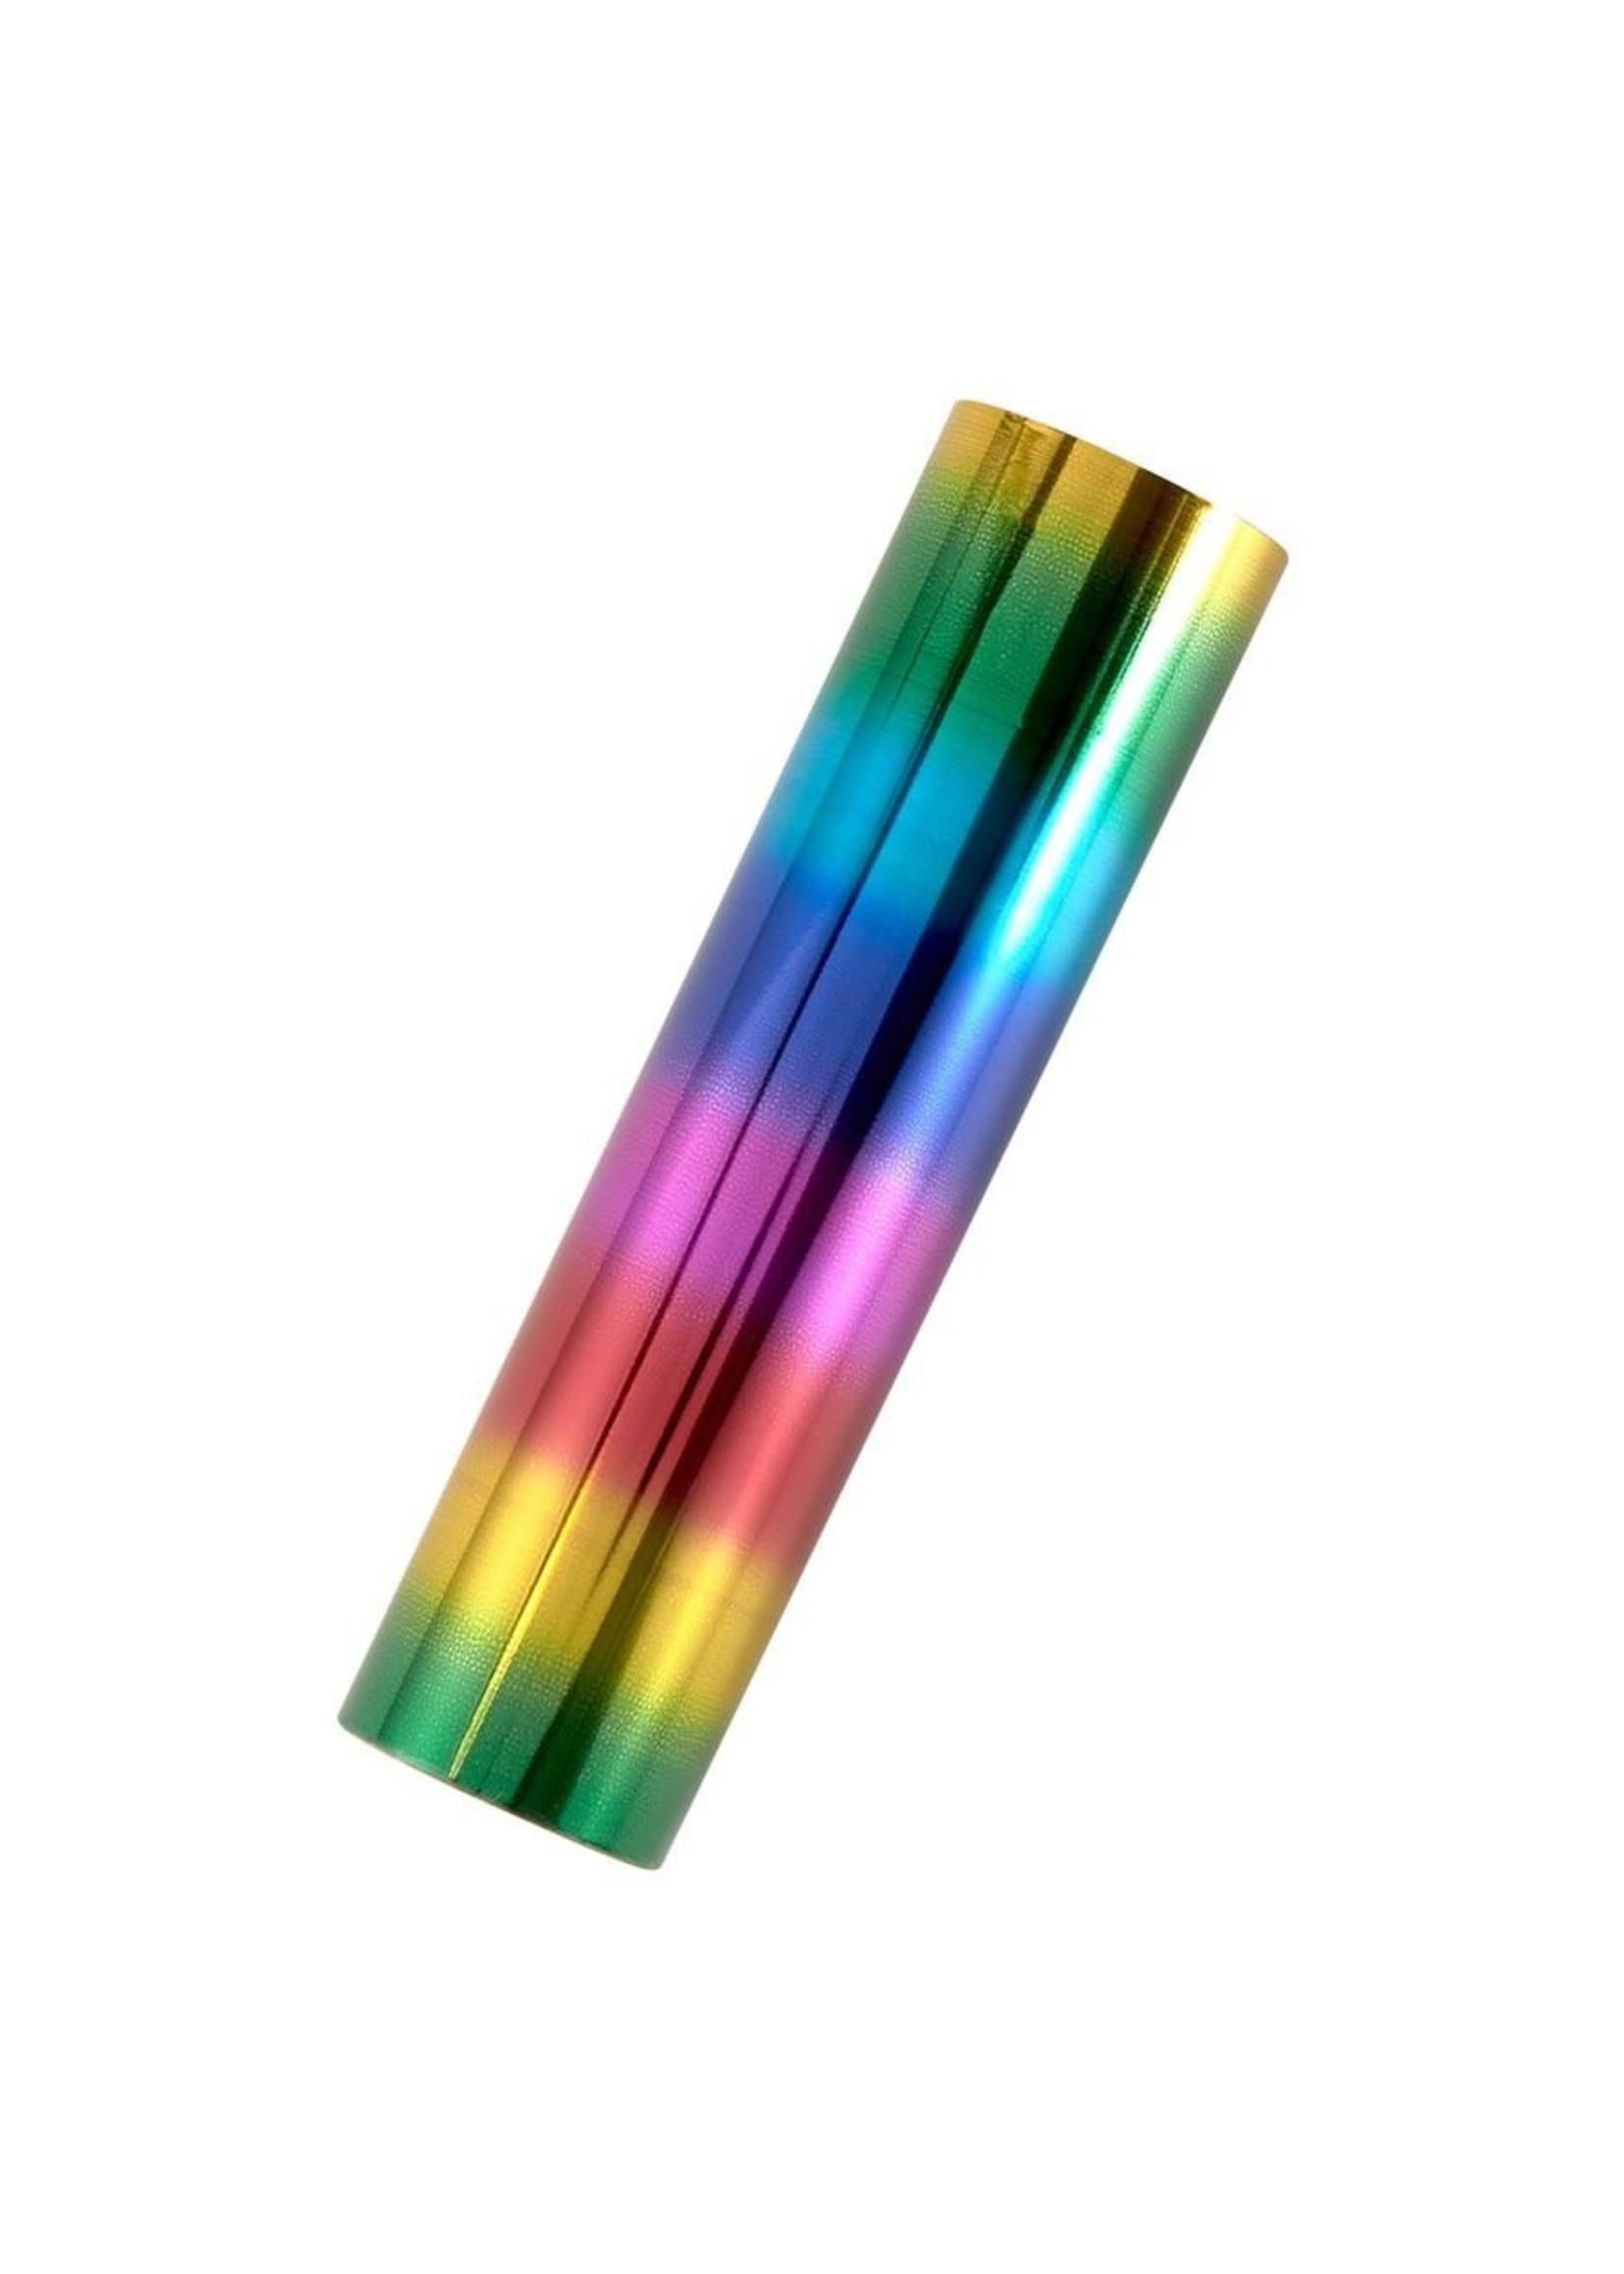 Spellbinders Spellbinders Glimmer Foil, Rainbow